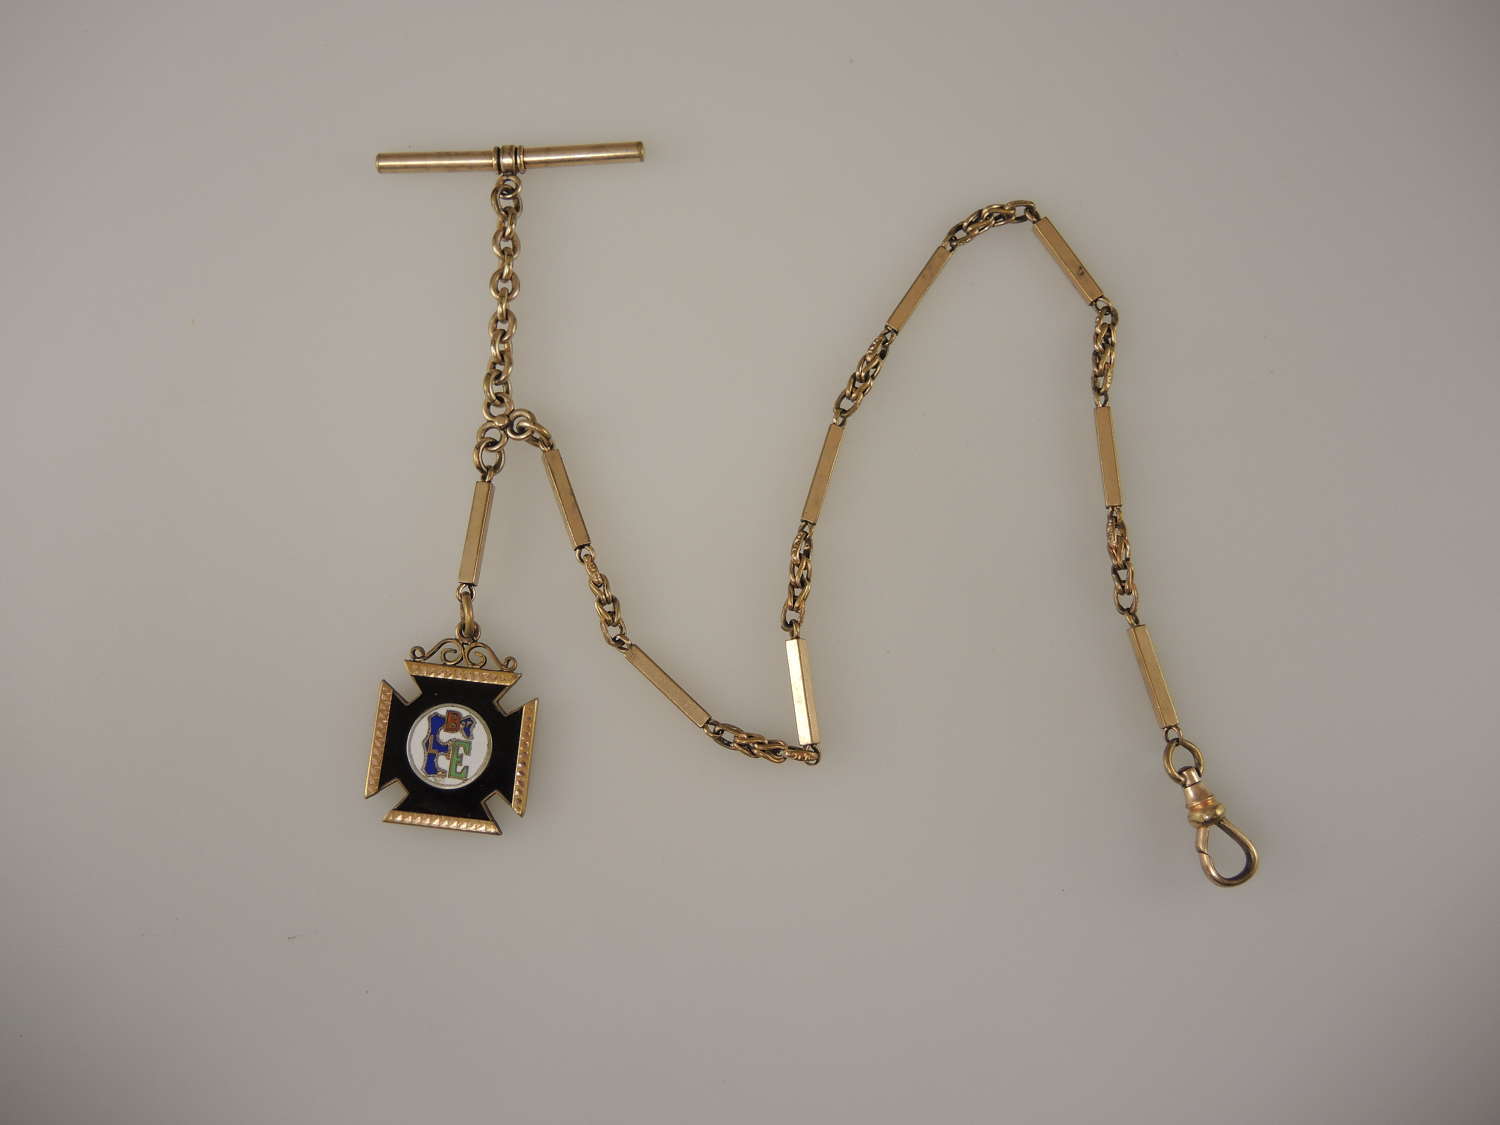 Fancy Gilt Watch chain w/ Brotherhood of RailRoad & Trainmen Fob c1910